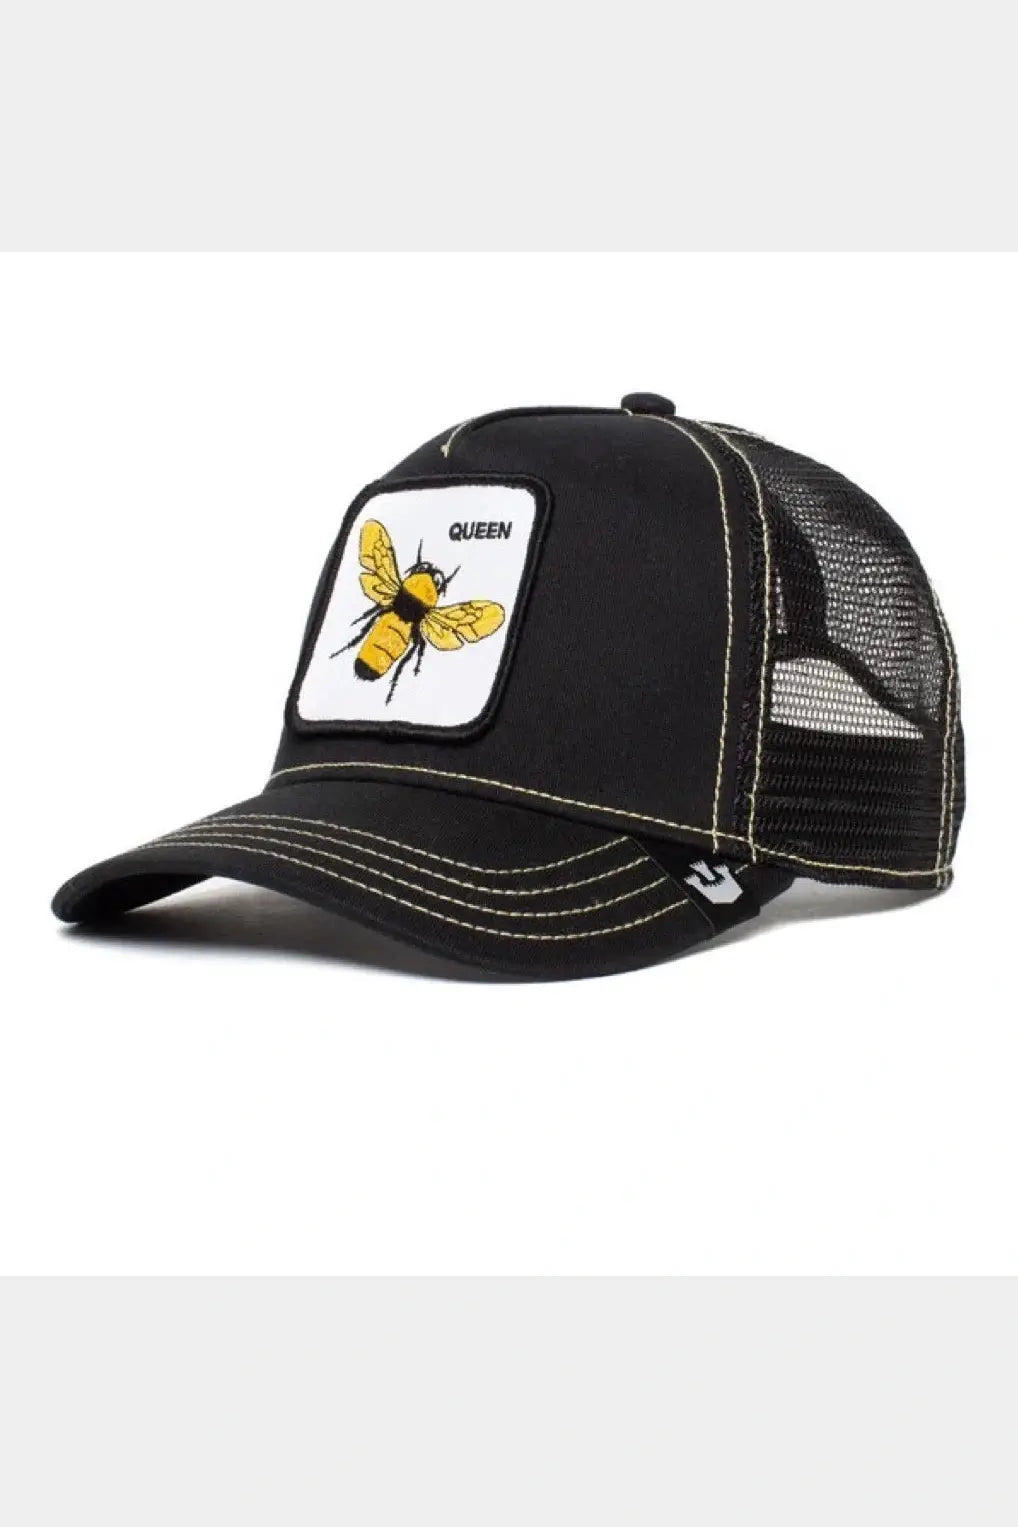 GOORIN BROS. trucker cap the Queen Bee - black